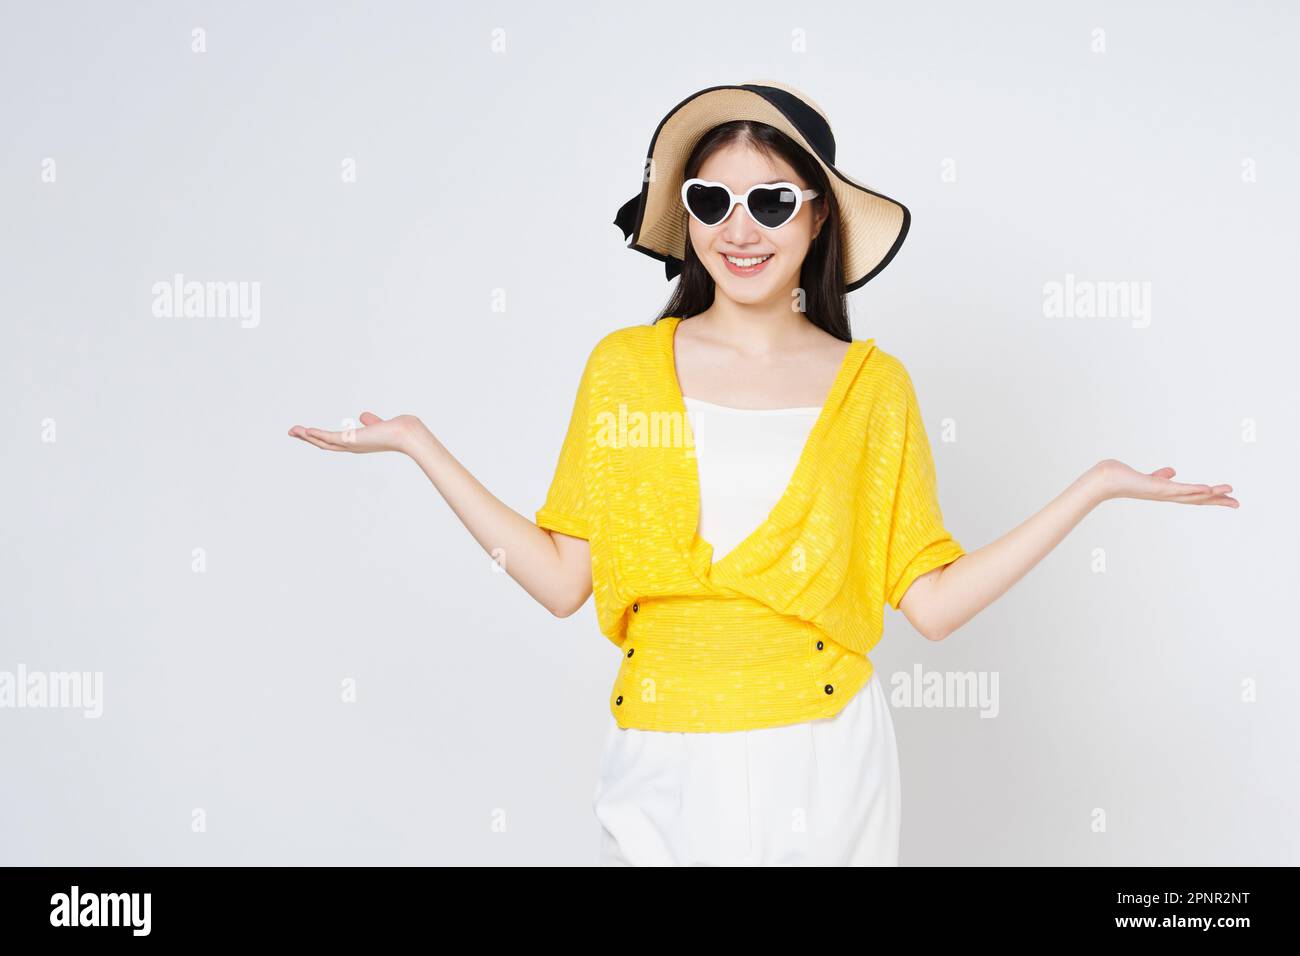 Eine junge Frau mit Sonnenhut und Sonnenbrille, die eine Handfläche mit offenem, isoliertem Kopierbereich für das Produkt auf weißem Hintergrund präsentiert oder zeigt. Stockfoto